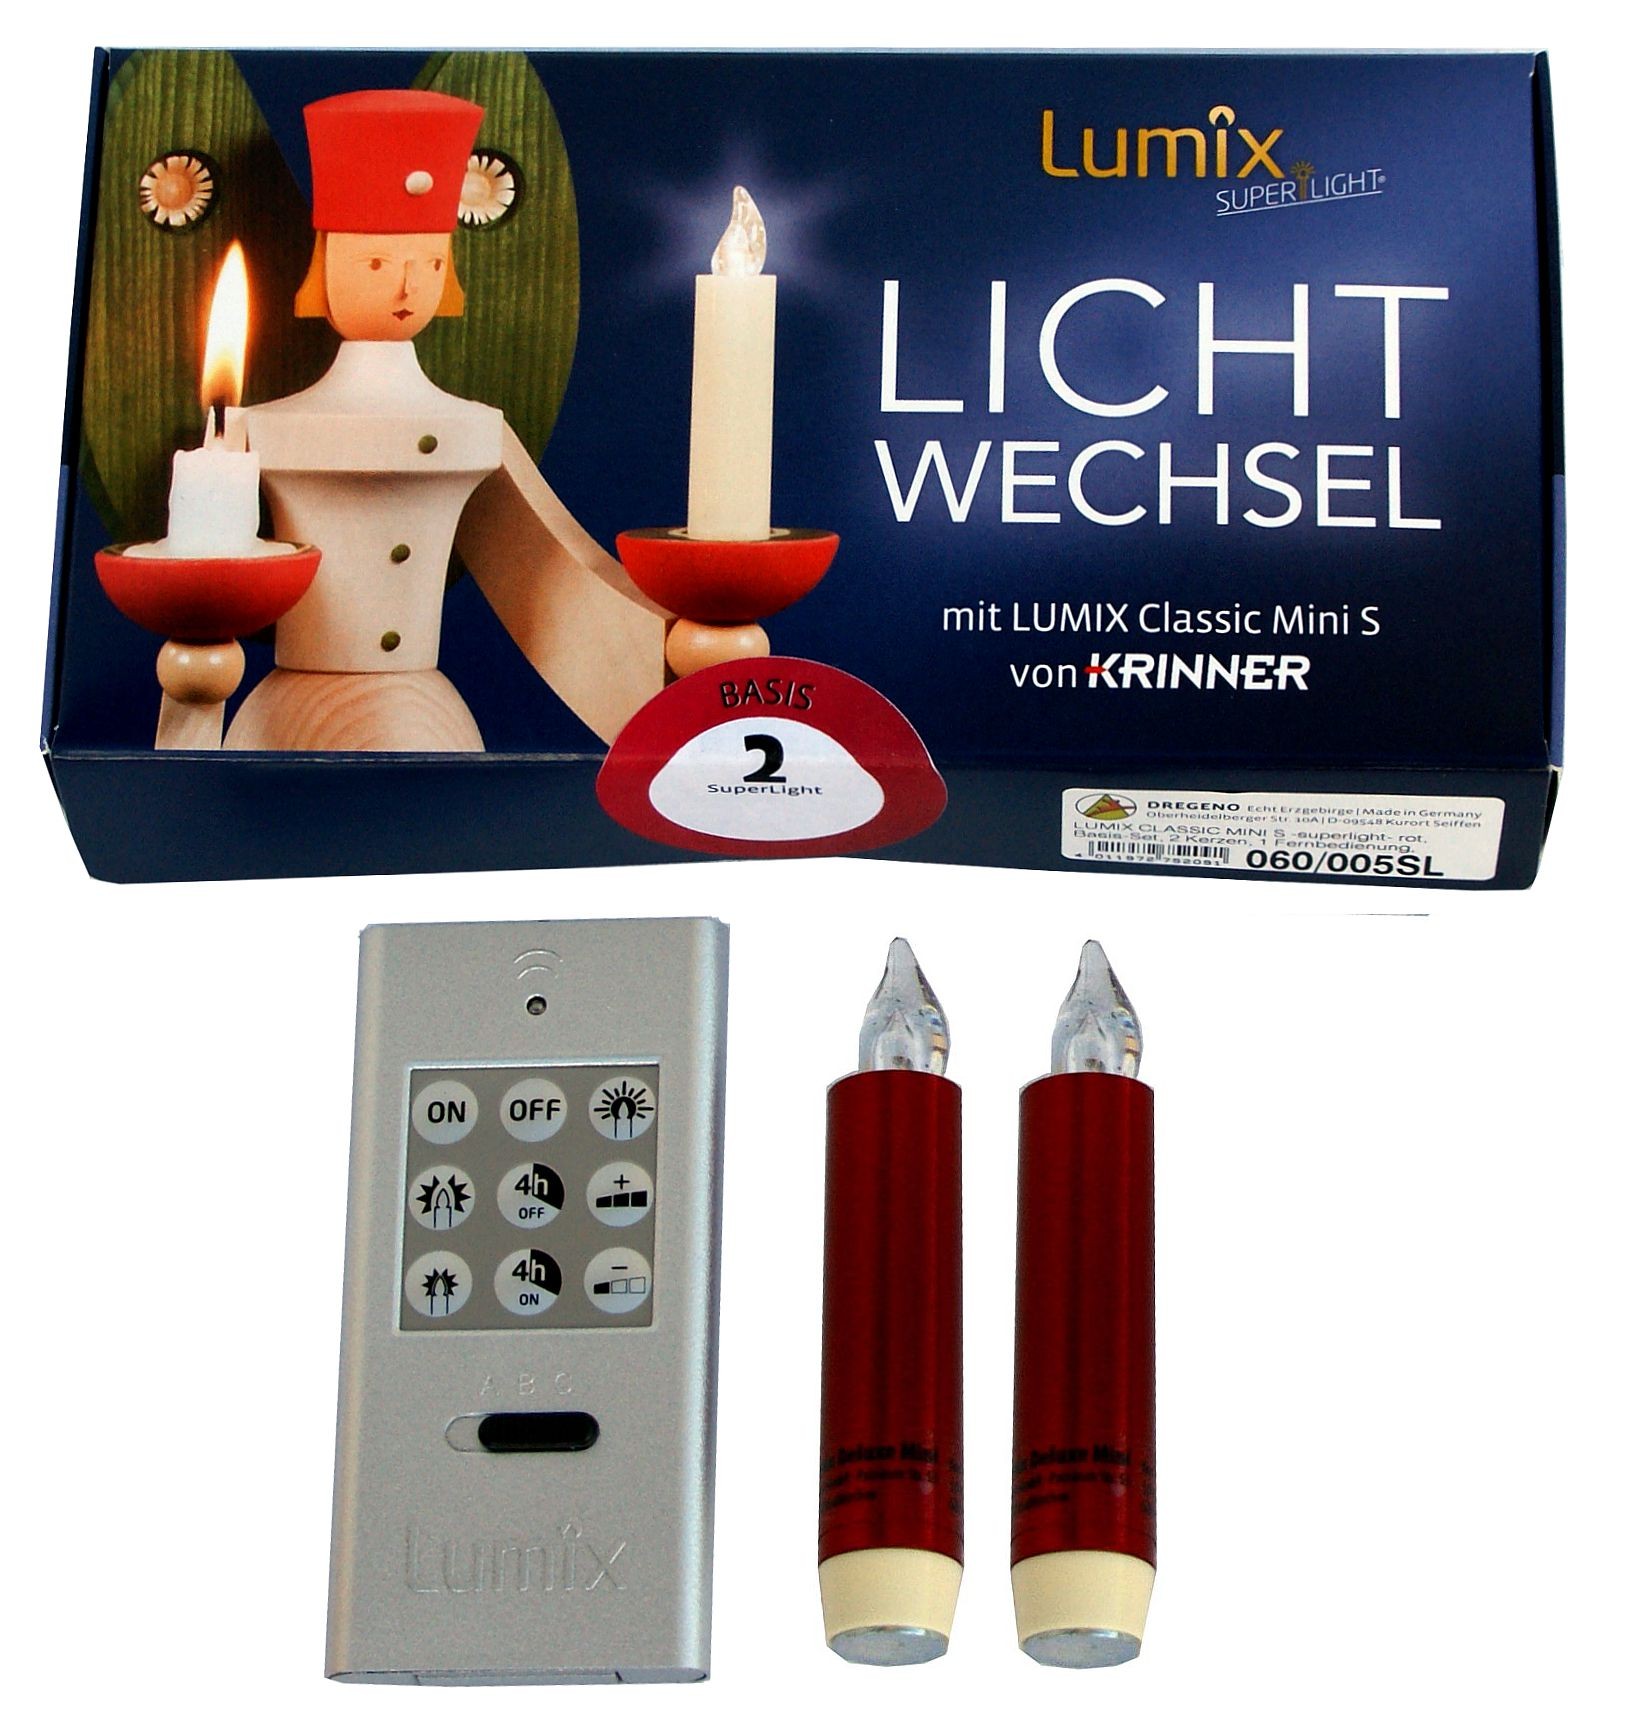 Dregeno Lumix Classic mini S - Lichtwechsel Basis 2er-Set rot